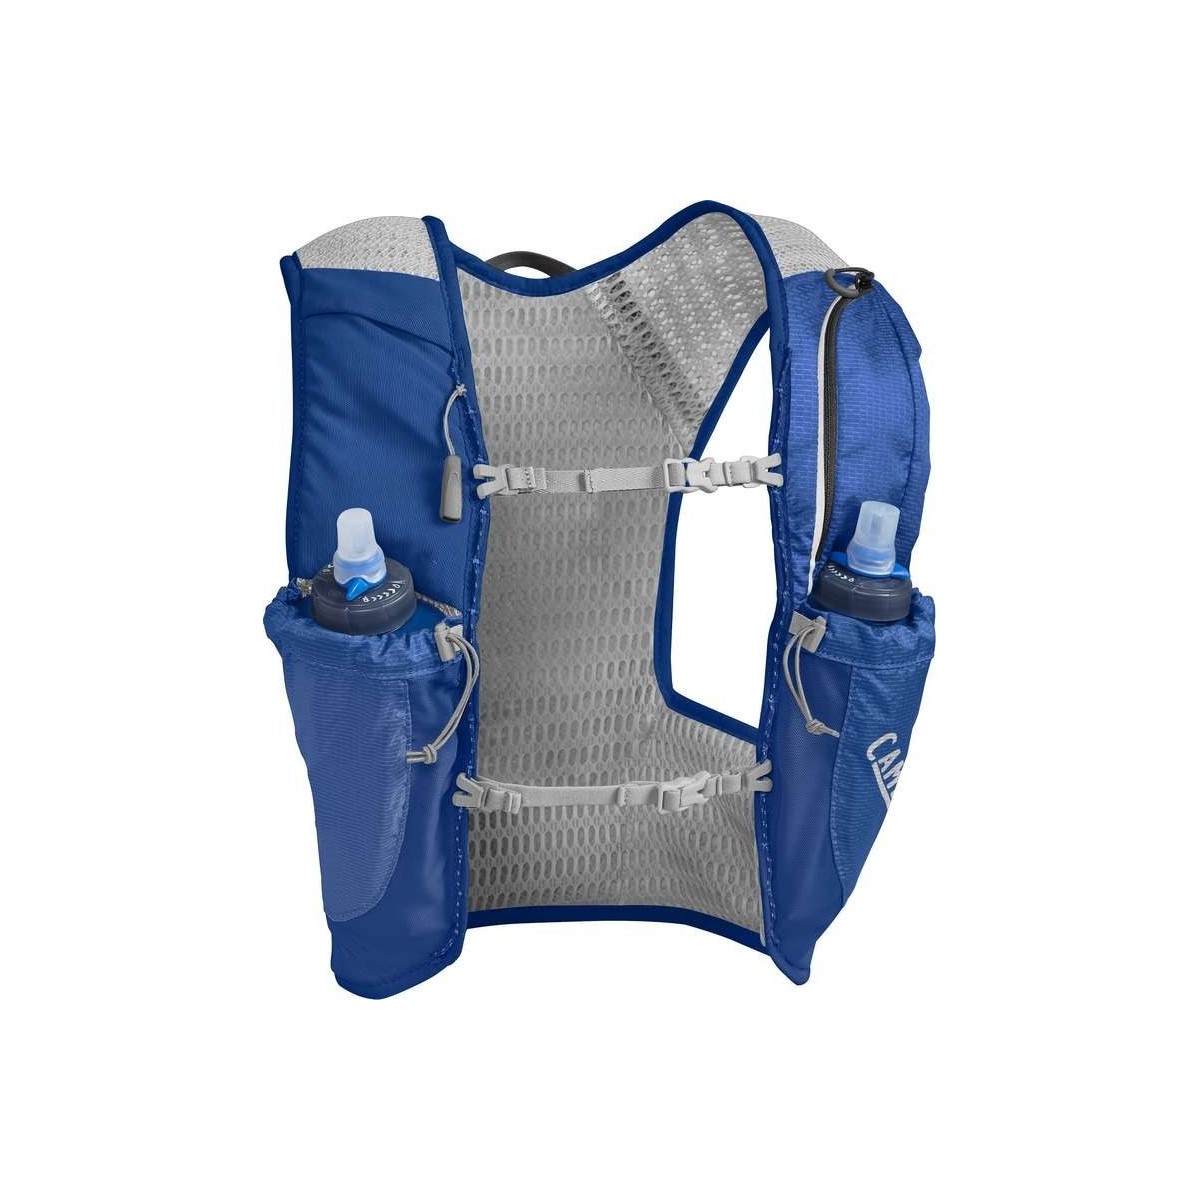 CAMELBAK running backpack ULTRA PRO VEST 7 liter blue (M)